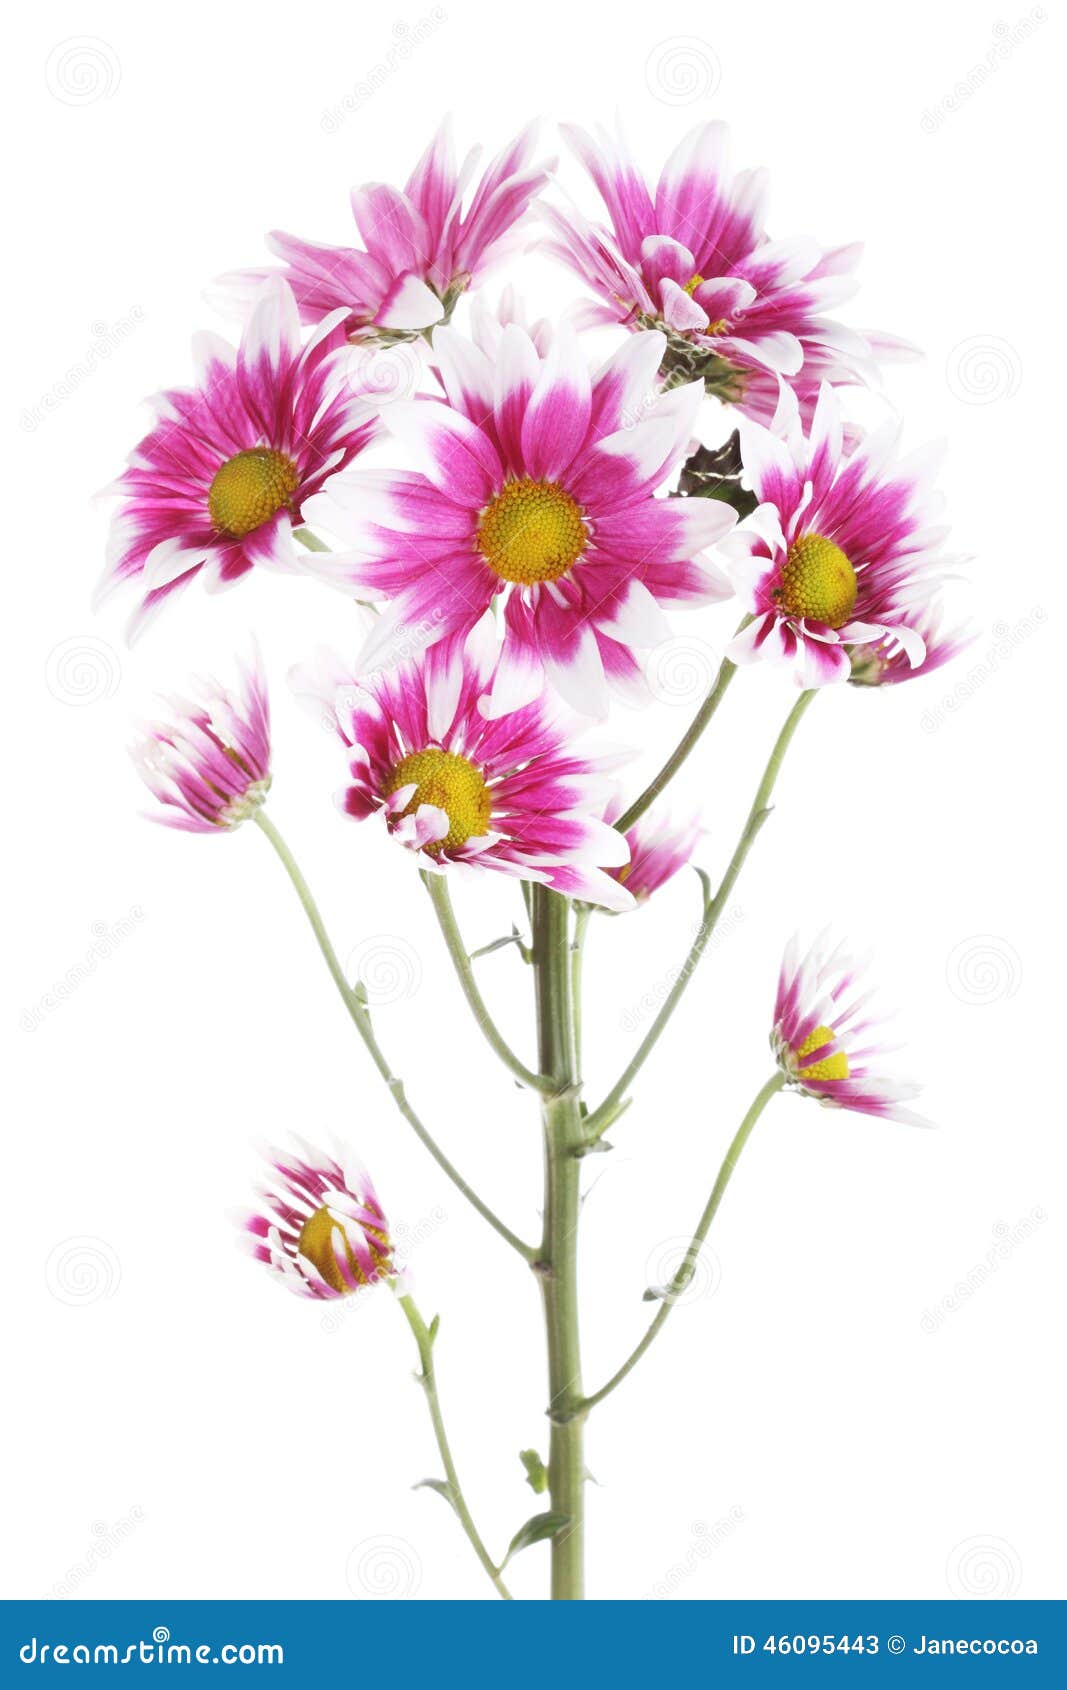 Beautiful Mum Flower on White Background Stock Image - Image of vibrant ...